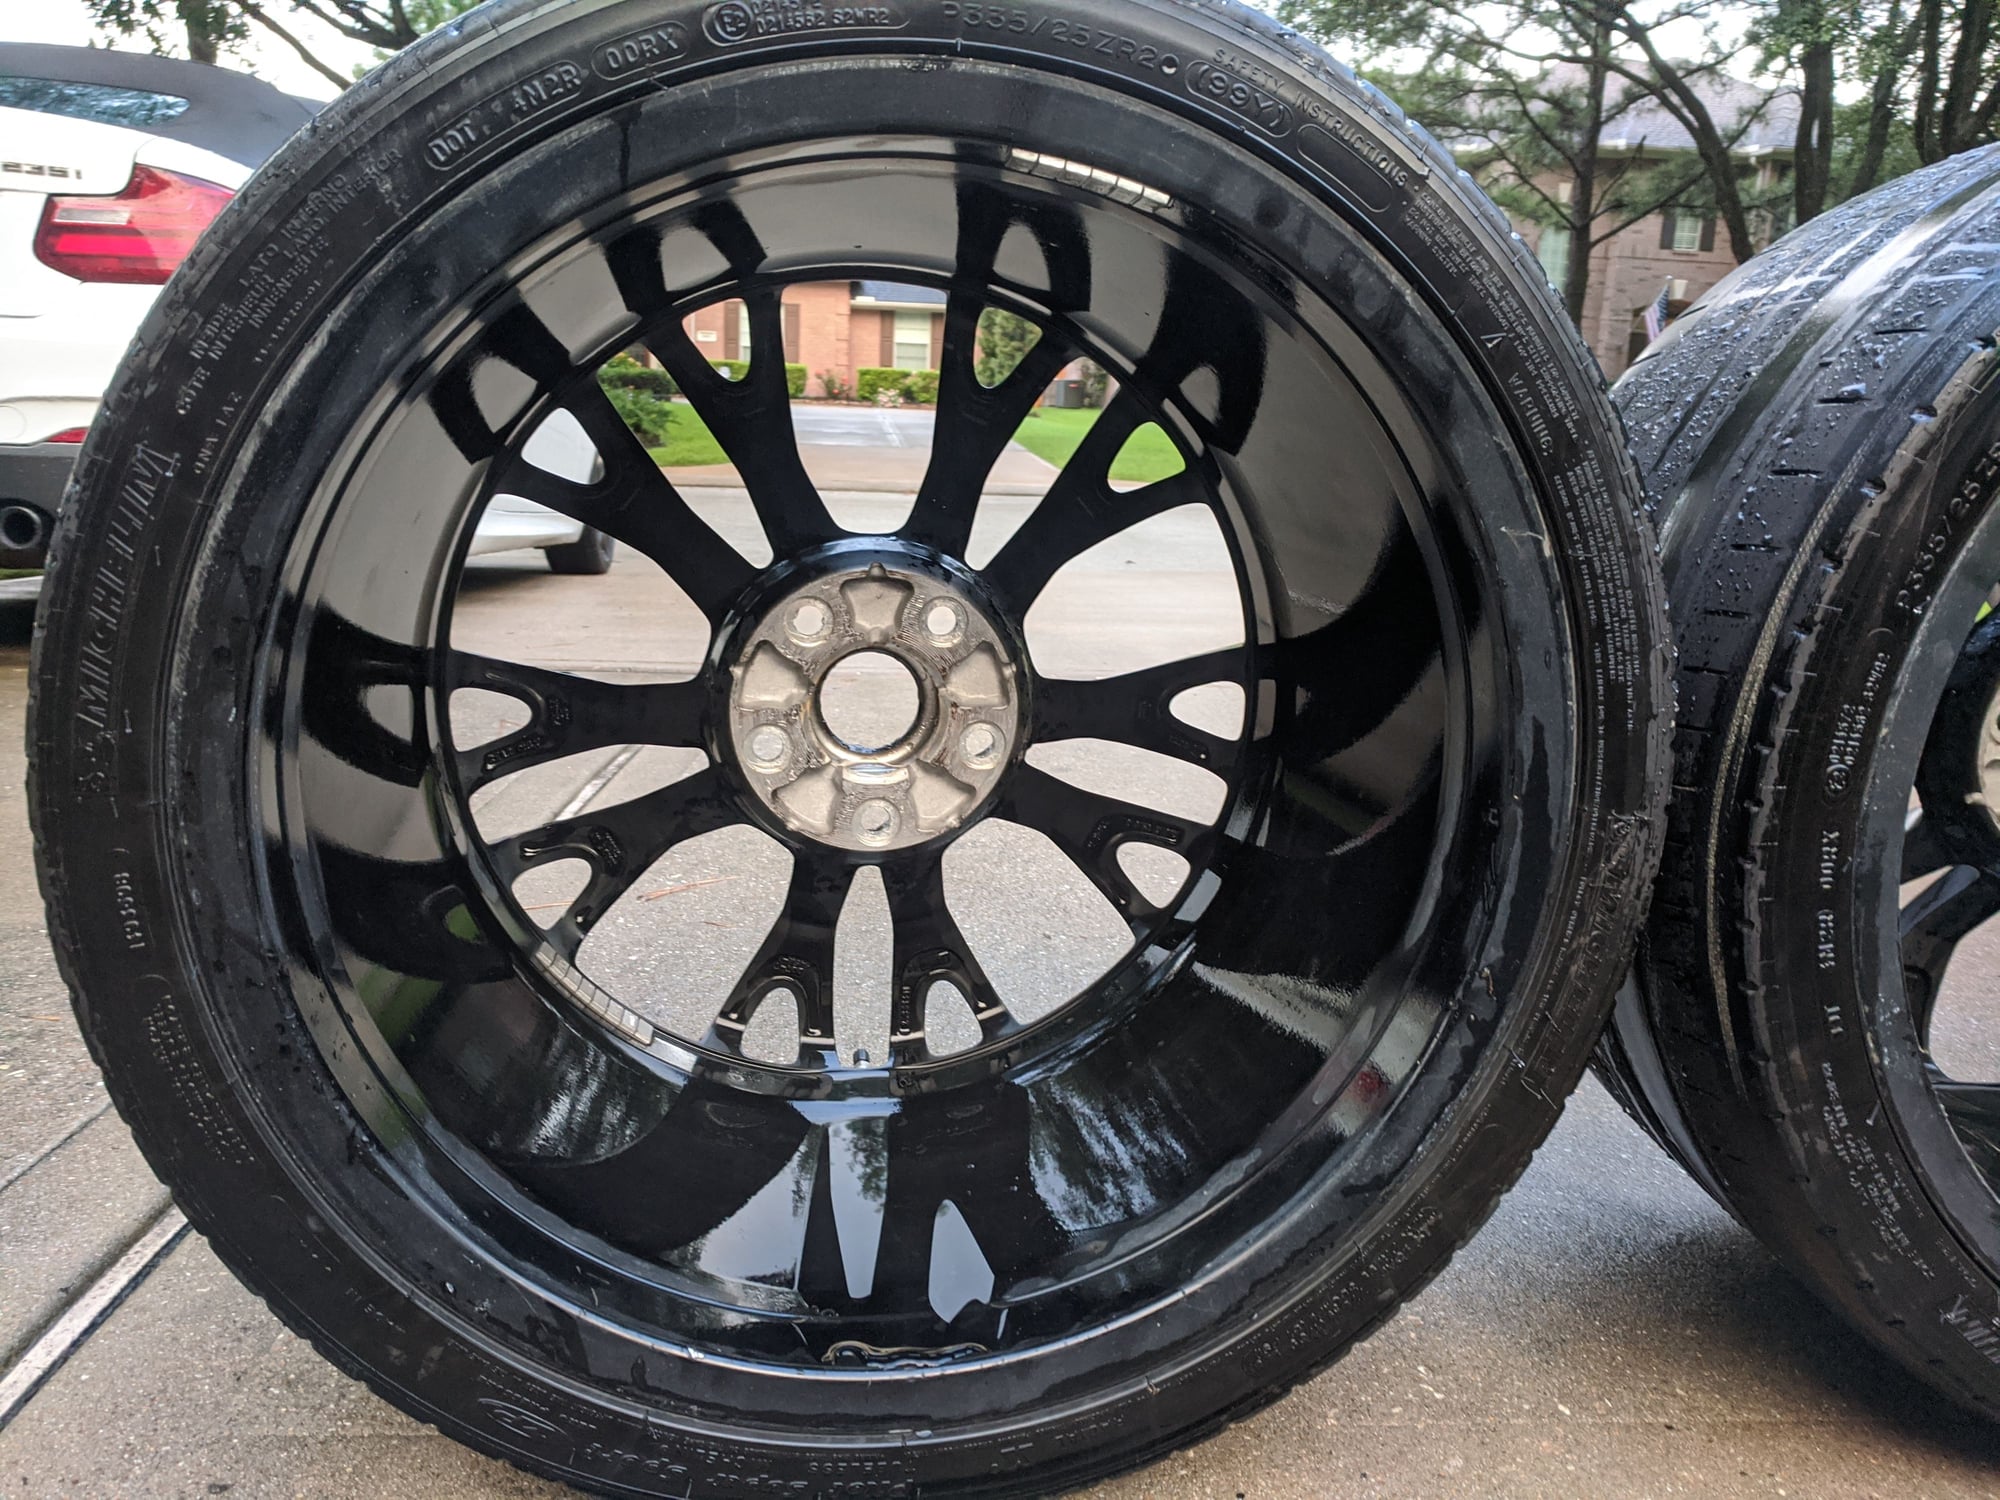 FS (For Sale) C7 Z06 Gloss Black OEM rims/wheels - CorvetteForum ...